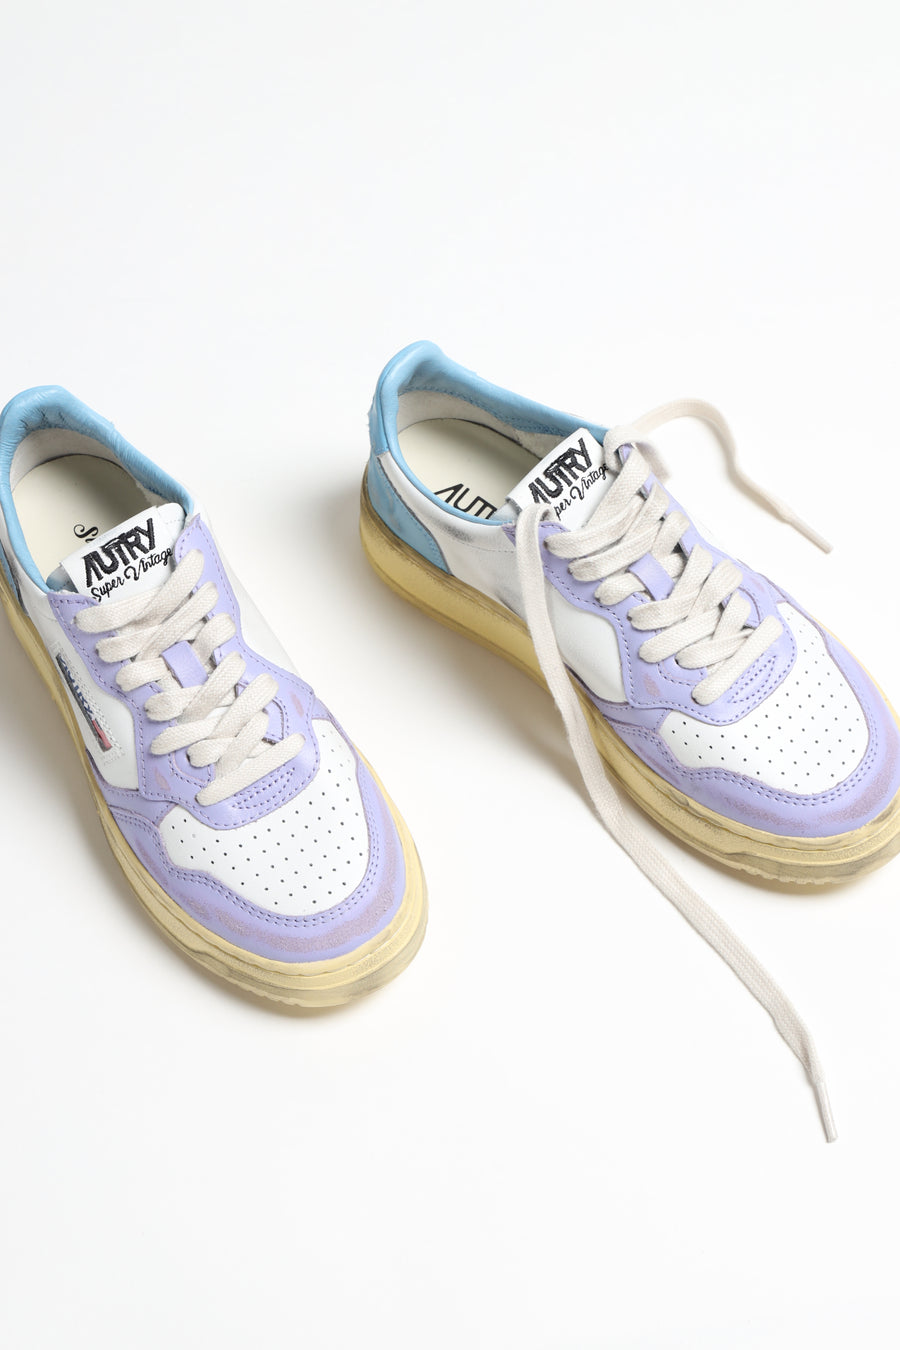 Sneaker Super Vintage in Weiß/Lavendel/AzurAutry - Anita Hass